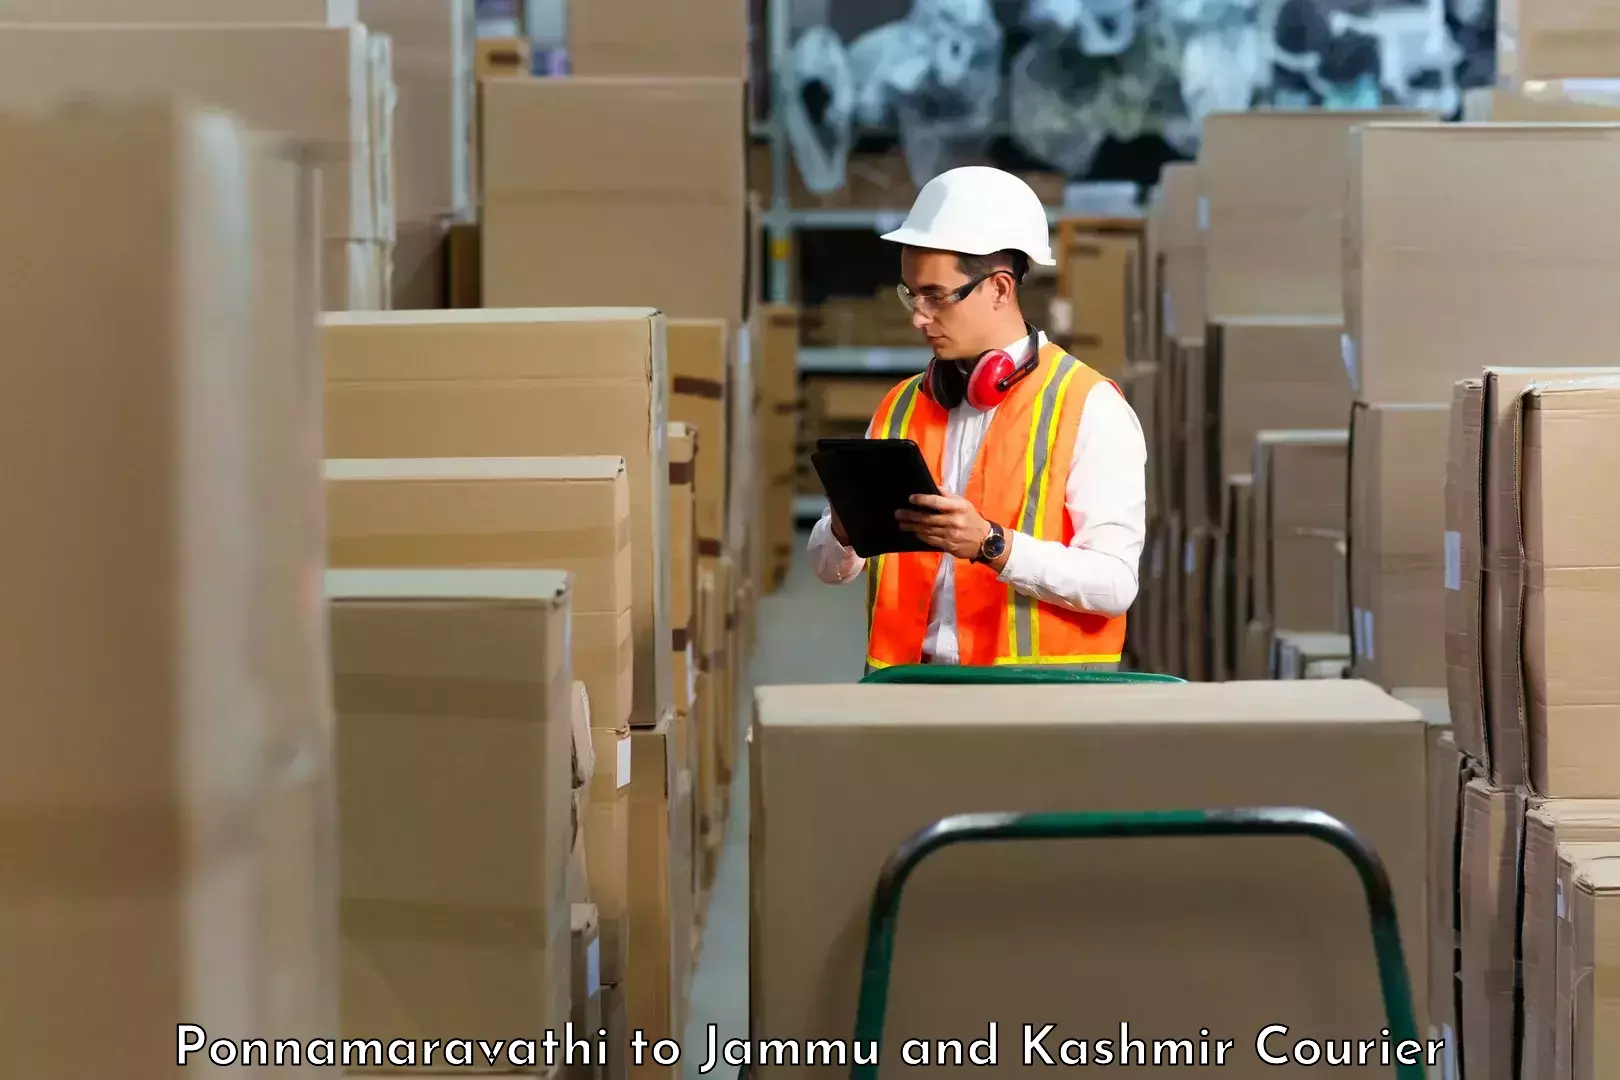 Quality courier partnerships Ponnamaravathi to University of Jammu